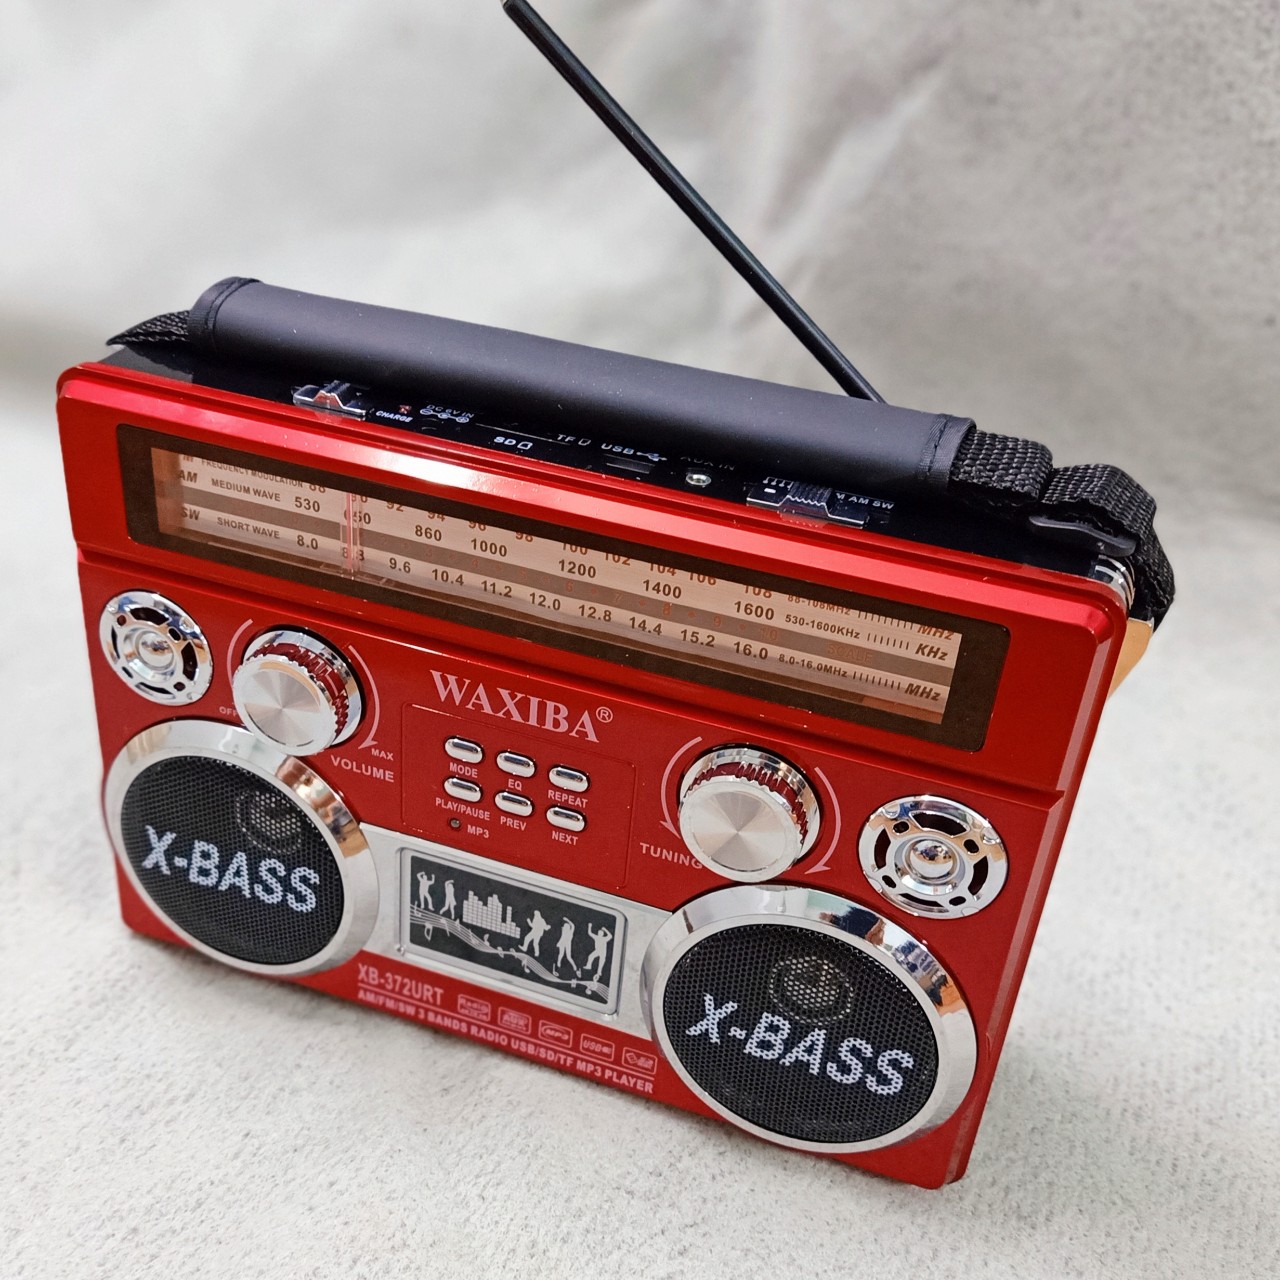 ĐÀI RADIO WAXIBA 371URT BẮT SÓNG FM/AM/SW – NGHE NHẠC TỪ USB THẺ NHỚ  Đậm Phong Cách Hàng Chính Hãng